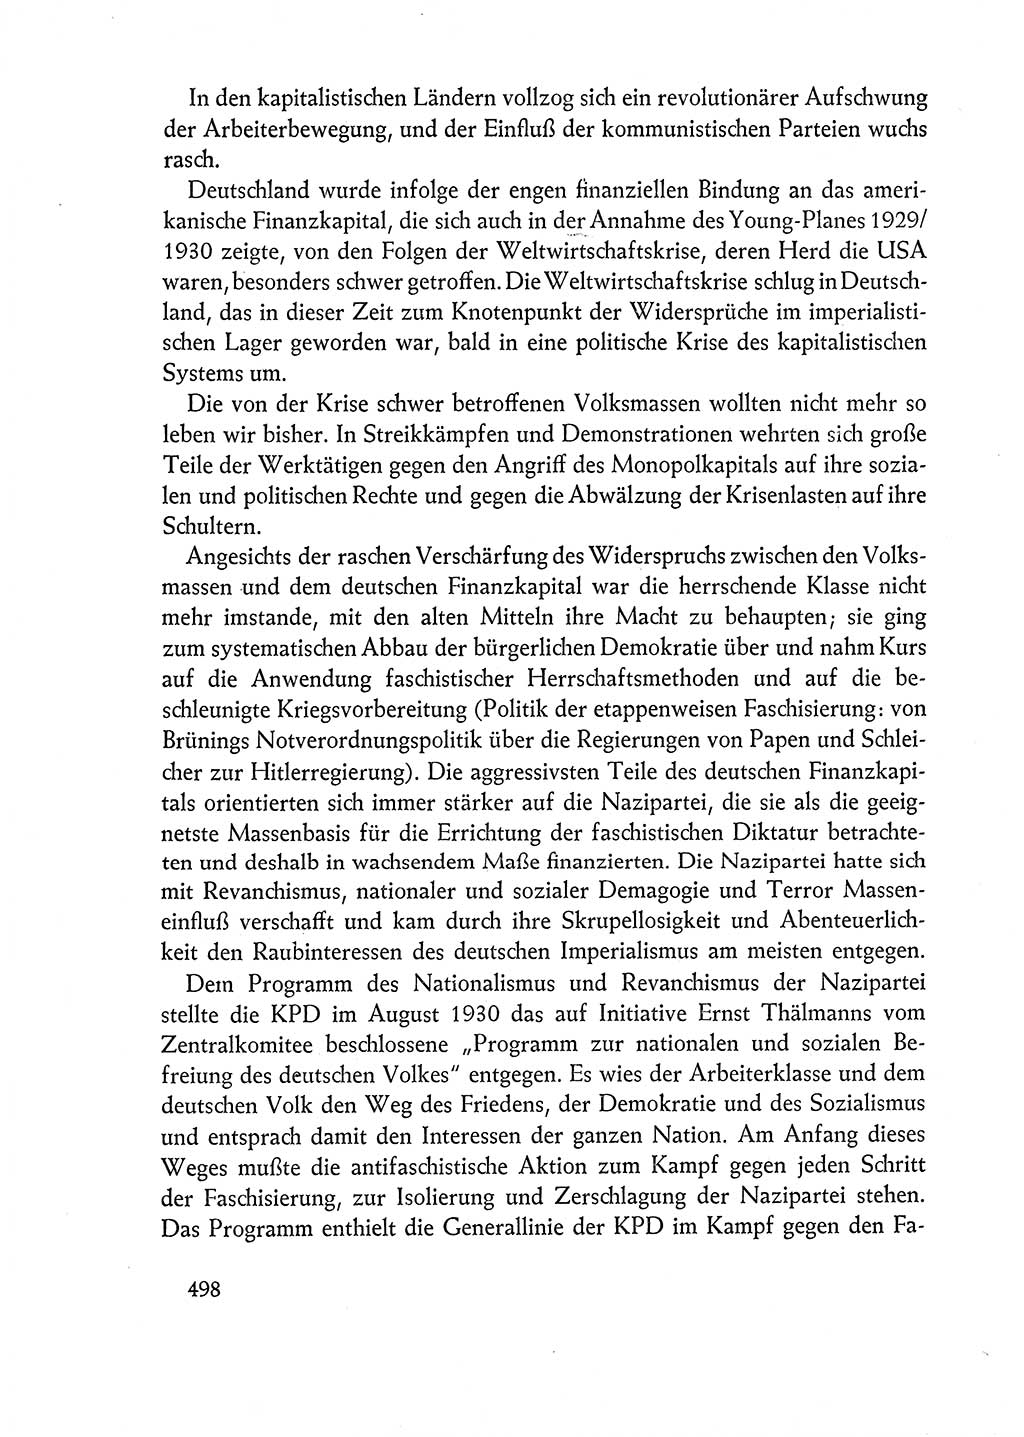 Dokumente der Sozialistischen Einheitspartei Deutschlands (SED) [Deutsche Demokratische Republik (DDR)] 1962-1963, Seite 498 (Dok. SED DDR 1962-1963, S. 498)